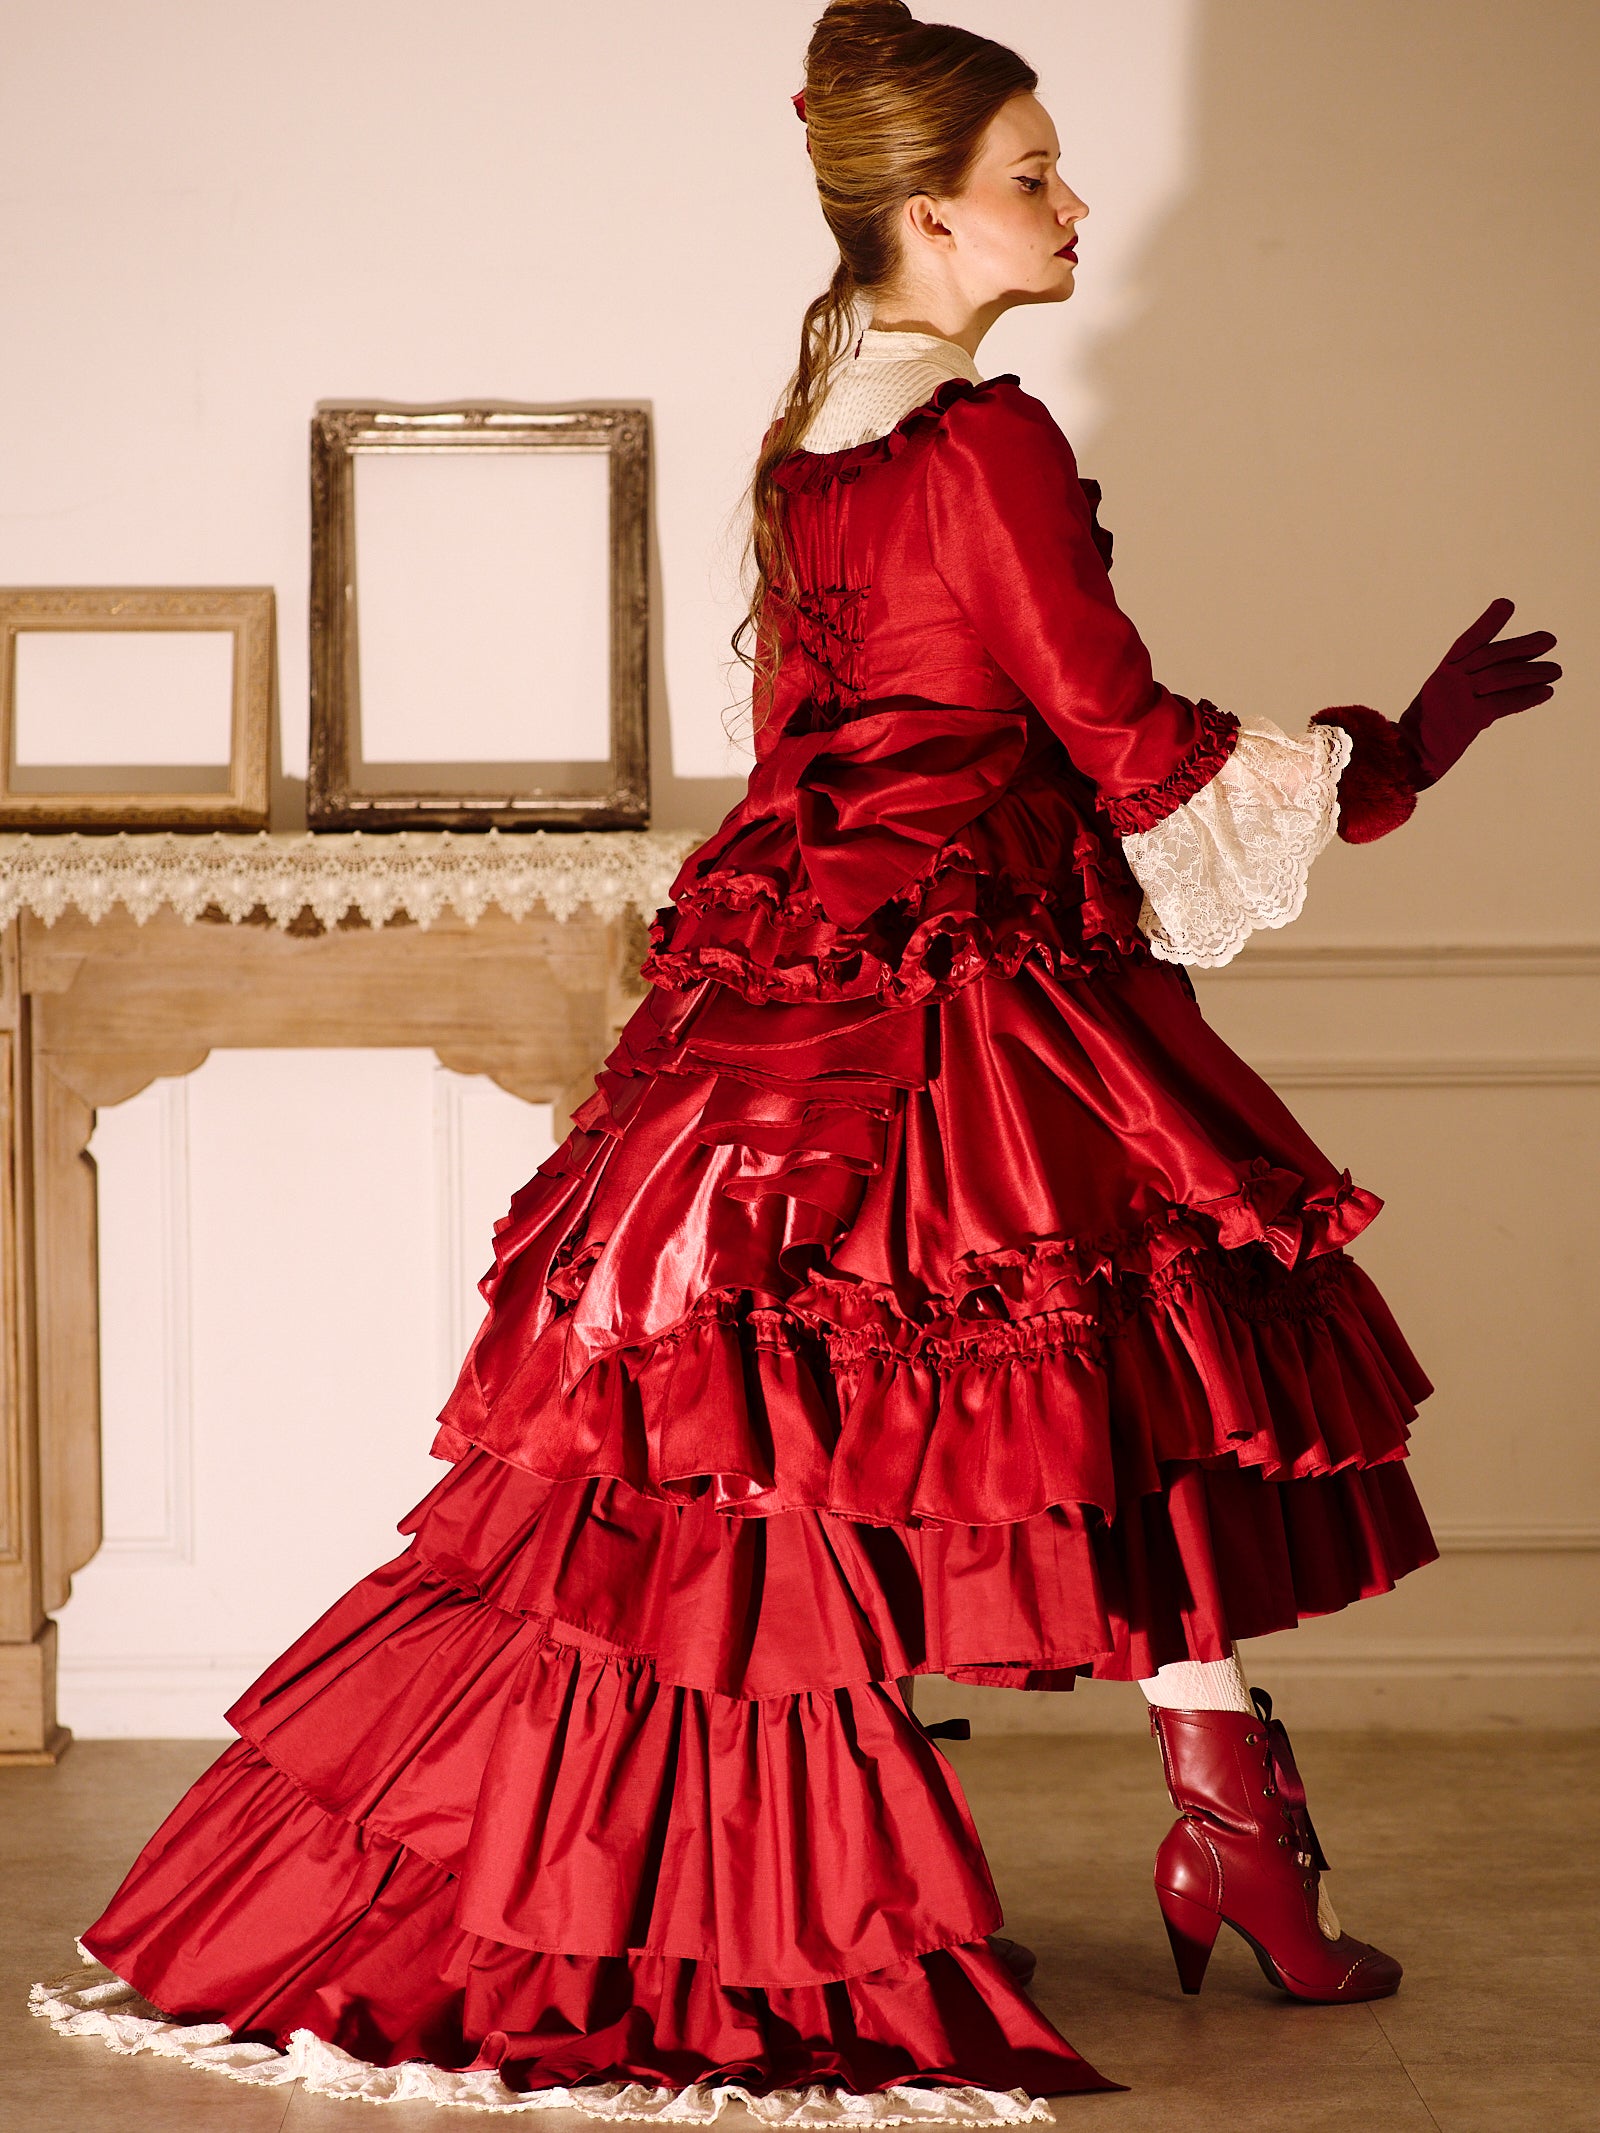 ヴィクトリアンジュビリーオーバースカート - Victorian maiden